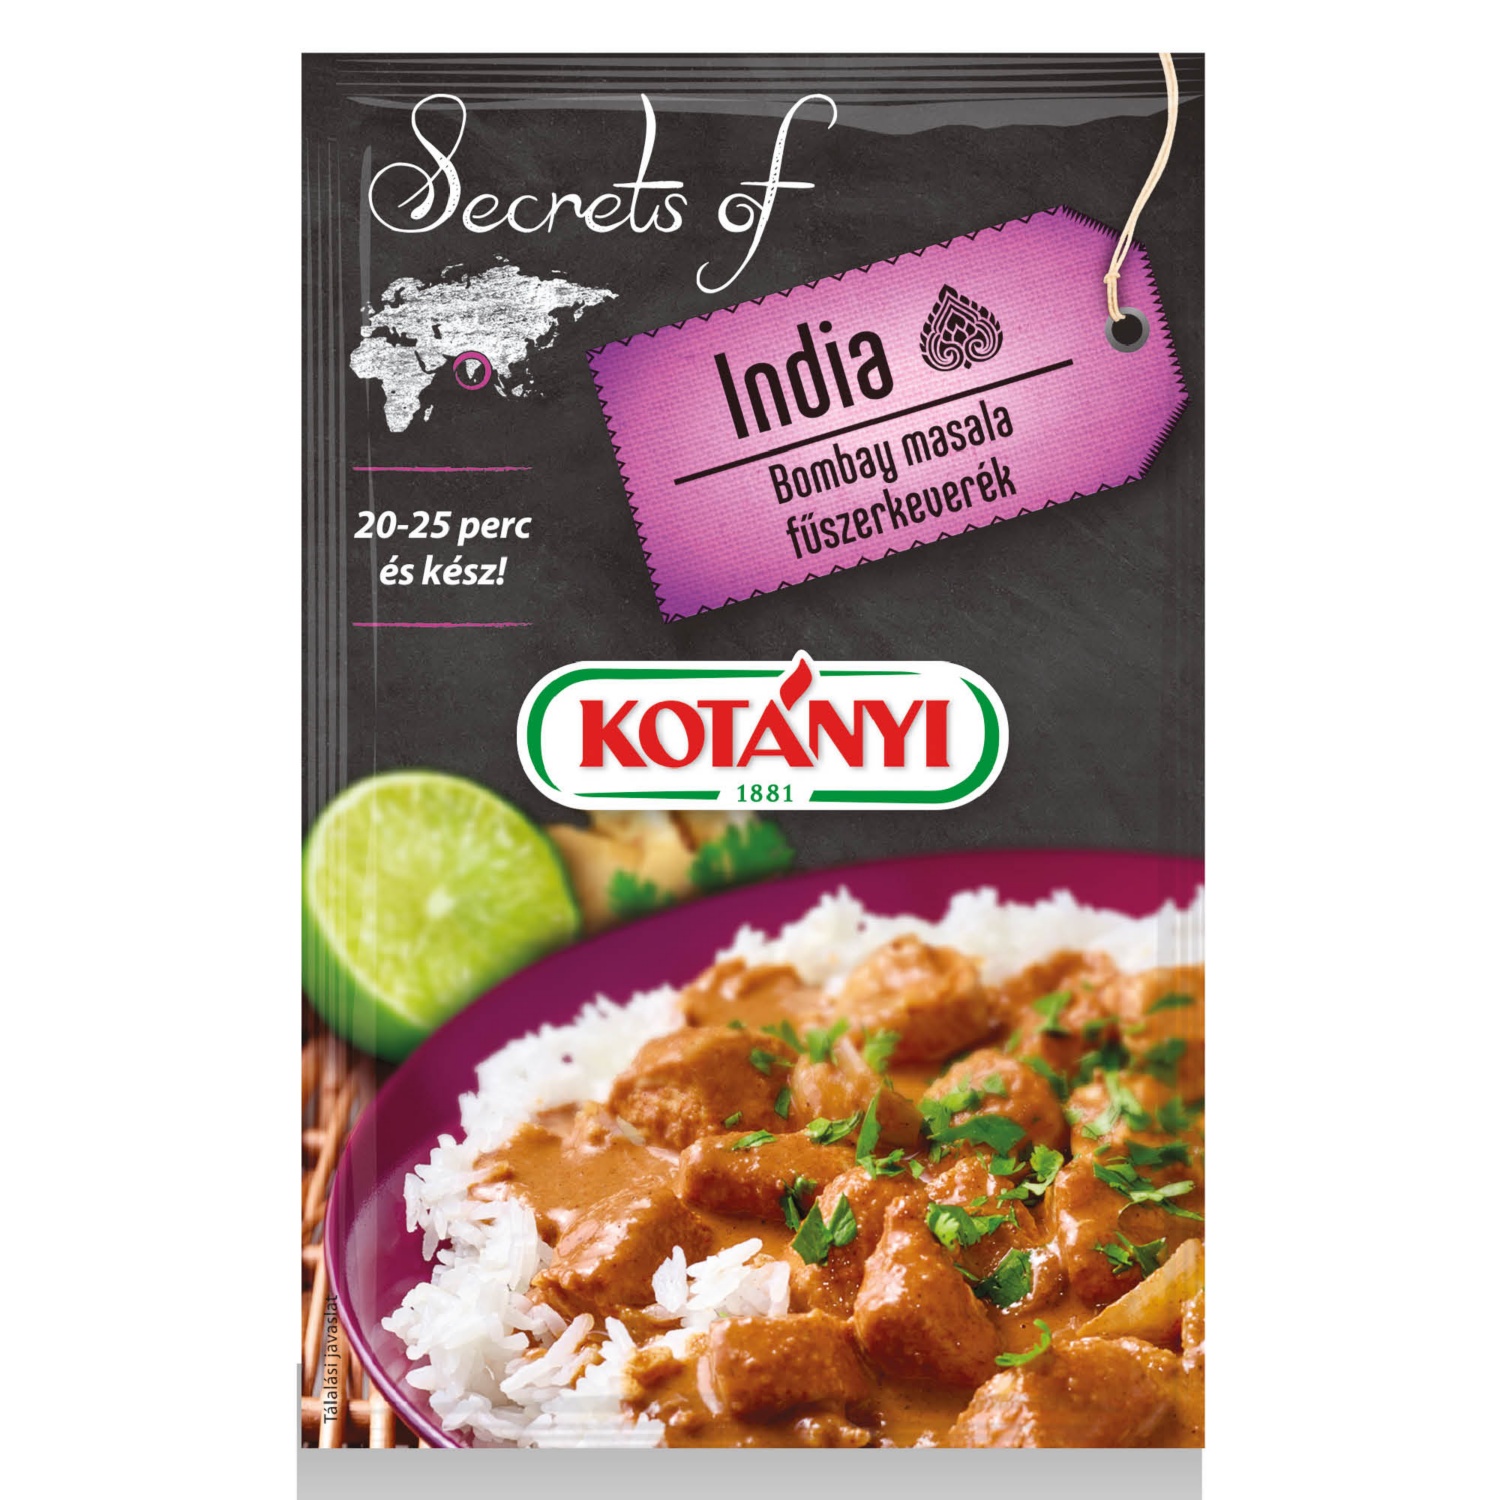 KOTÁNYI Secrets of India, Bombay masala fűszerkeverék, 20 g